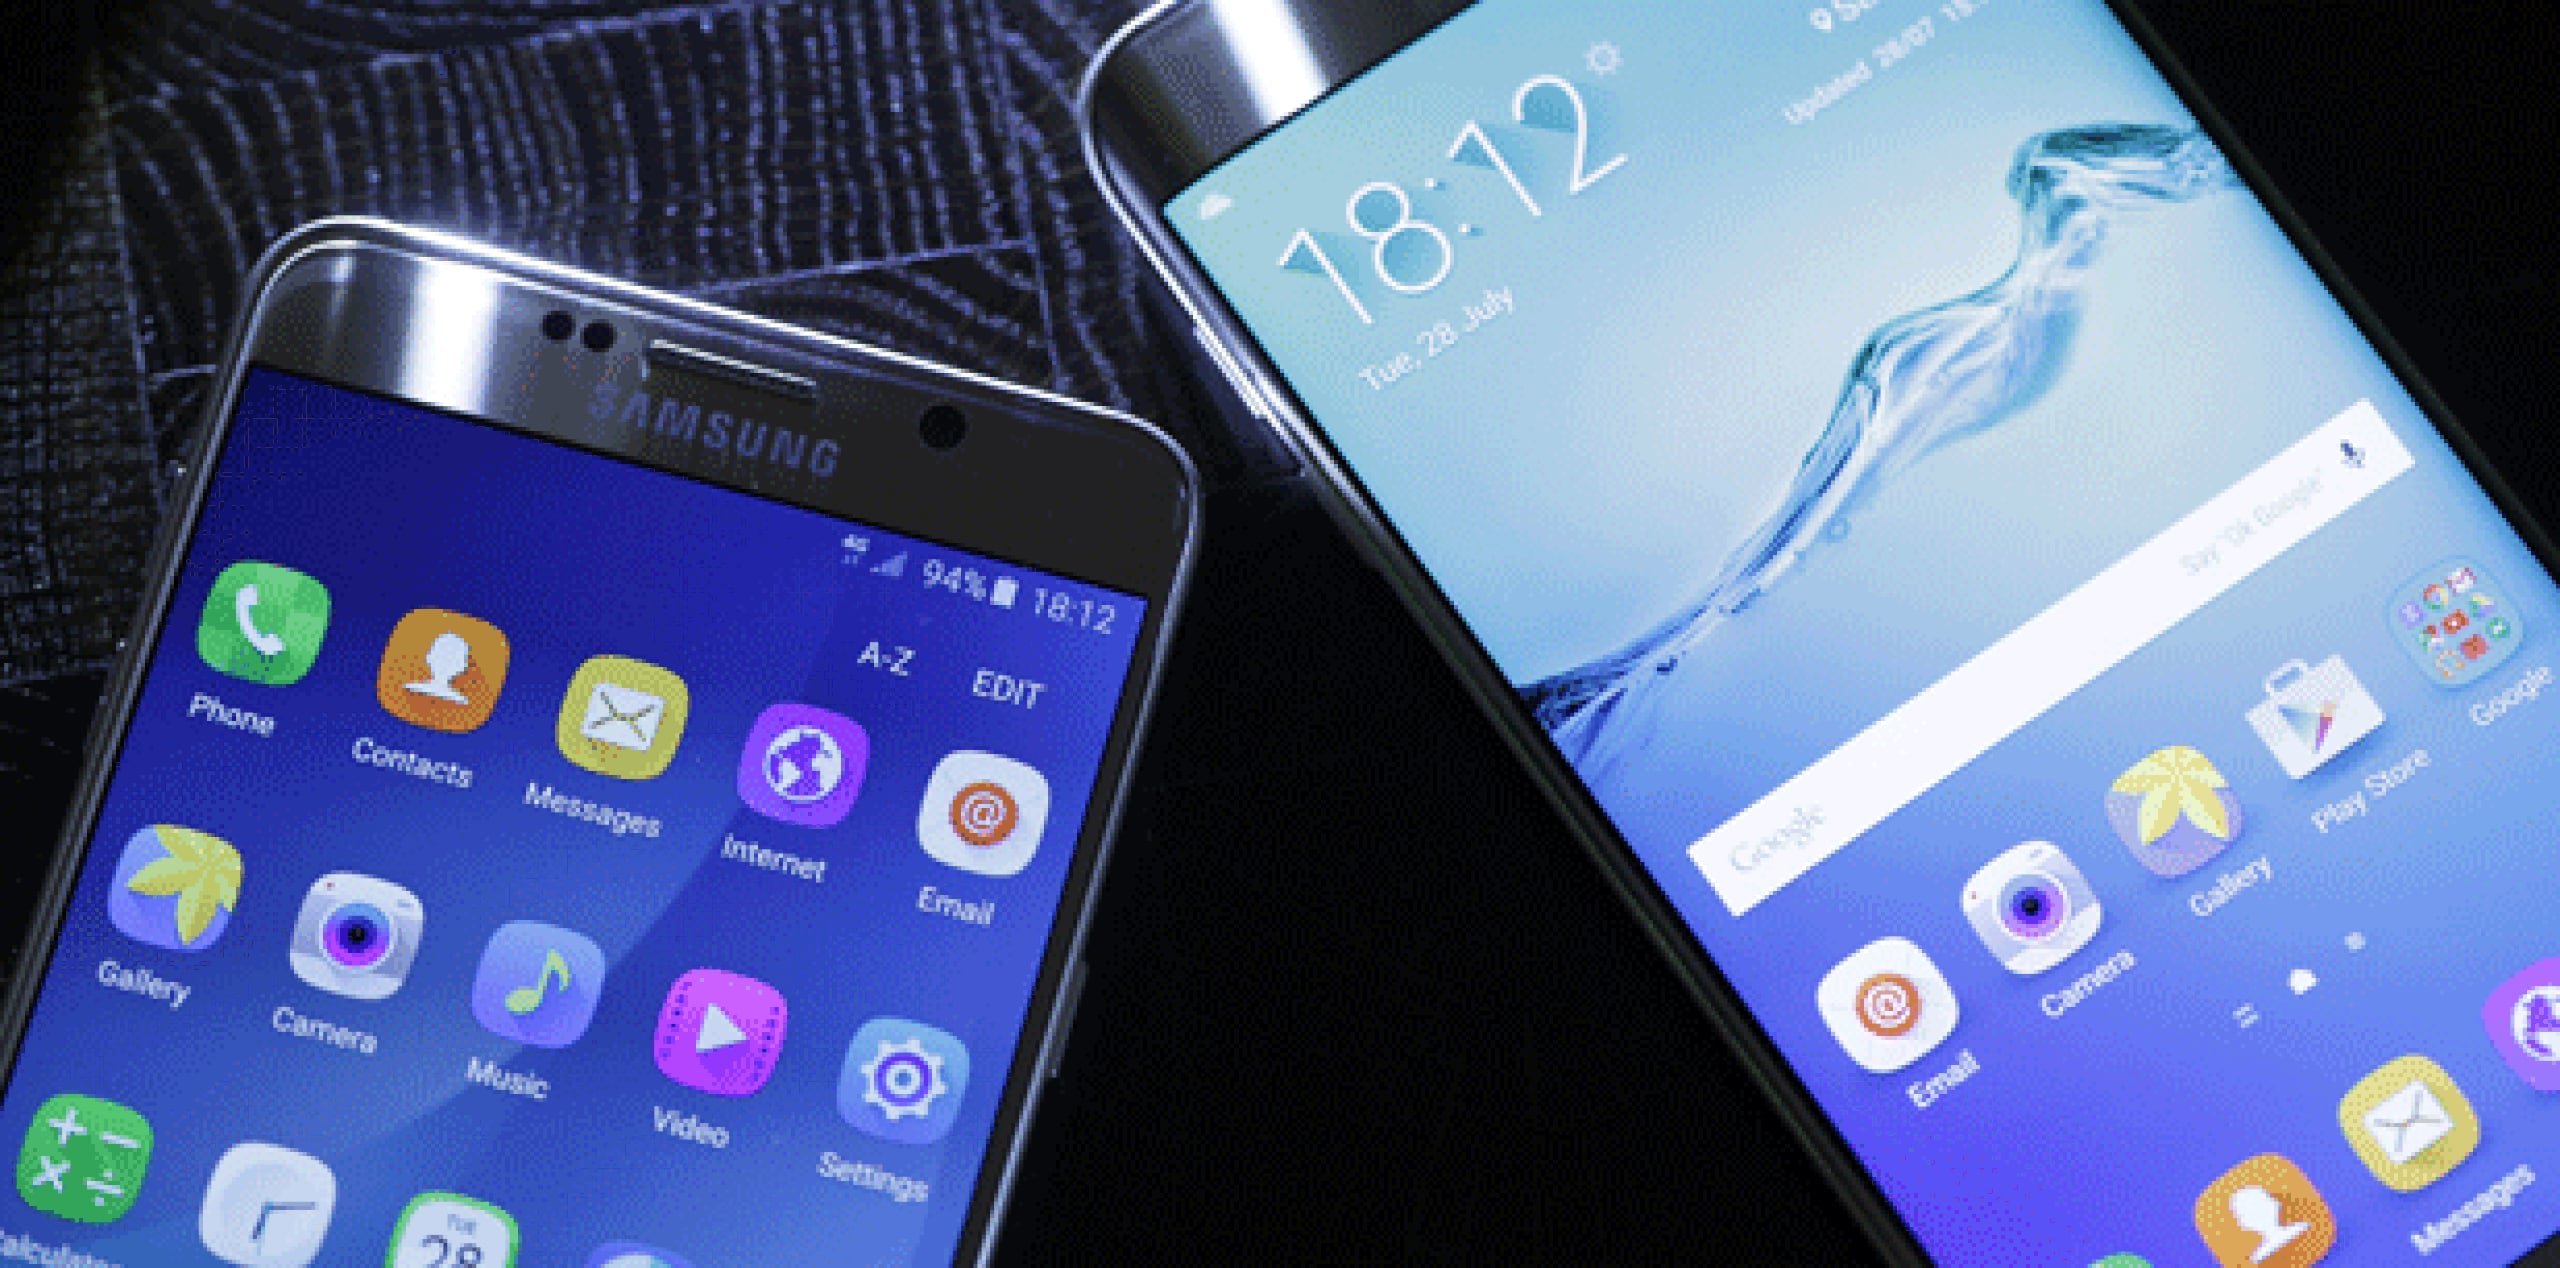 Los teléfonos de alta gama de Samsung siguieron enfrentando un duro rival con el iPhone de Apple en el trimestre, detalló Gartner. La empresa surcoreana perdió mercado mientras la estadounidense ganó un poco más. (Archivo)